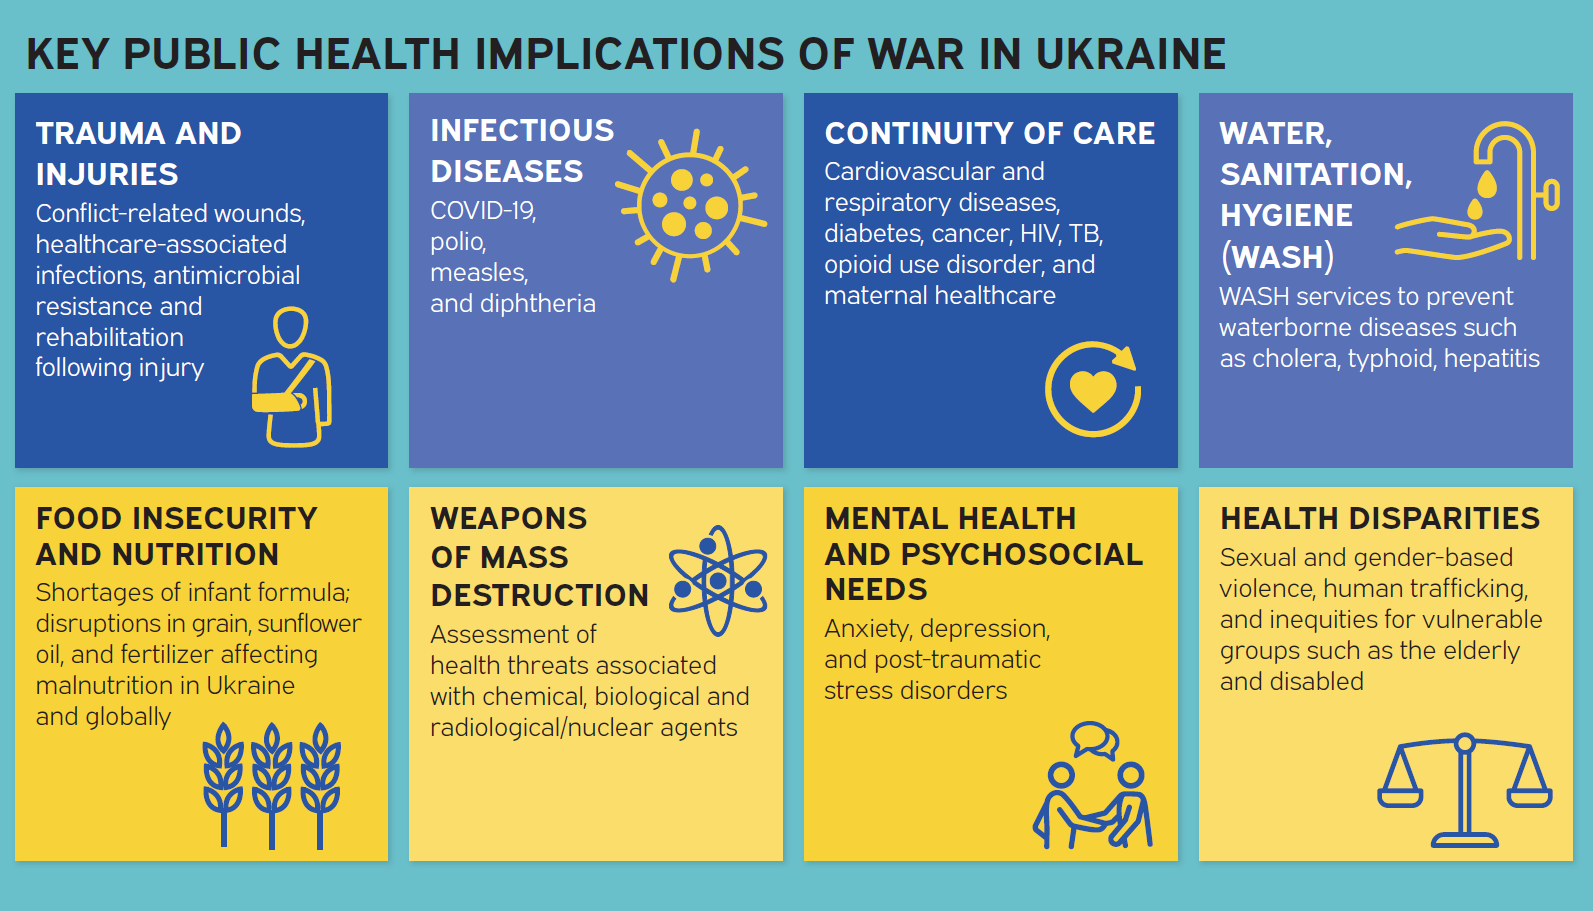 KEY PUBLIC HEALTH IMPLICATIONS OF WAR IN UKRAINE